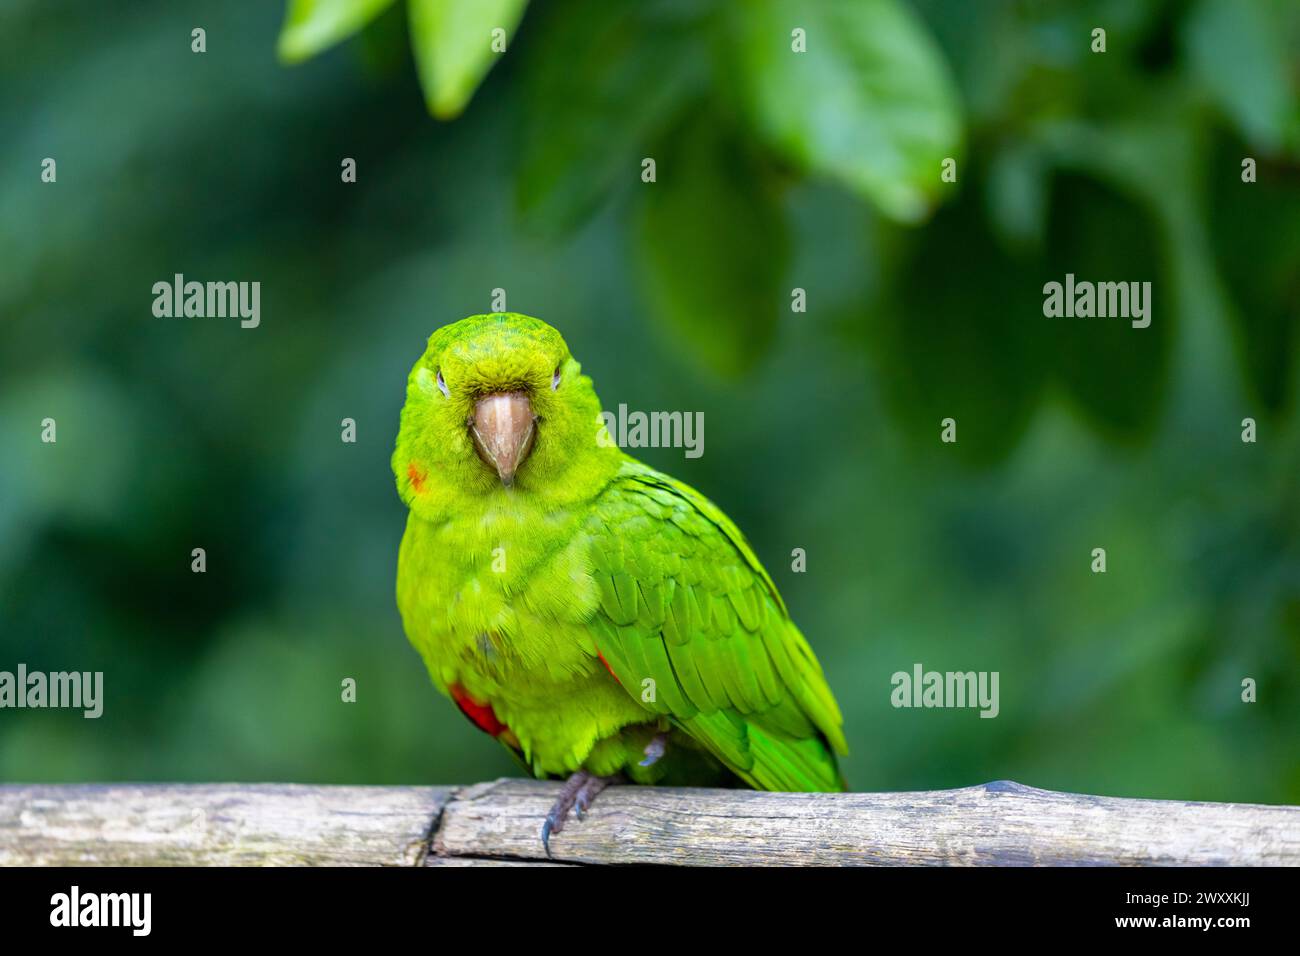 Grüner Papagei in einem Vogelzoo Parque das Aves Vogelpark Brasilien Iguazu Wasserfälle. Farbenfrohe, exotische Vögel aus Federn im Regenwald Stockfoto